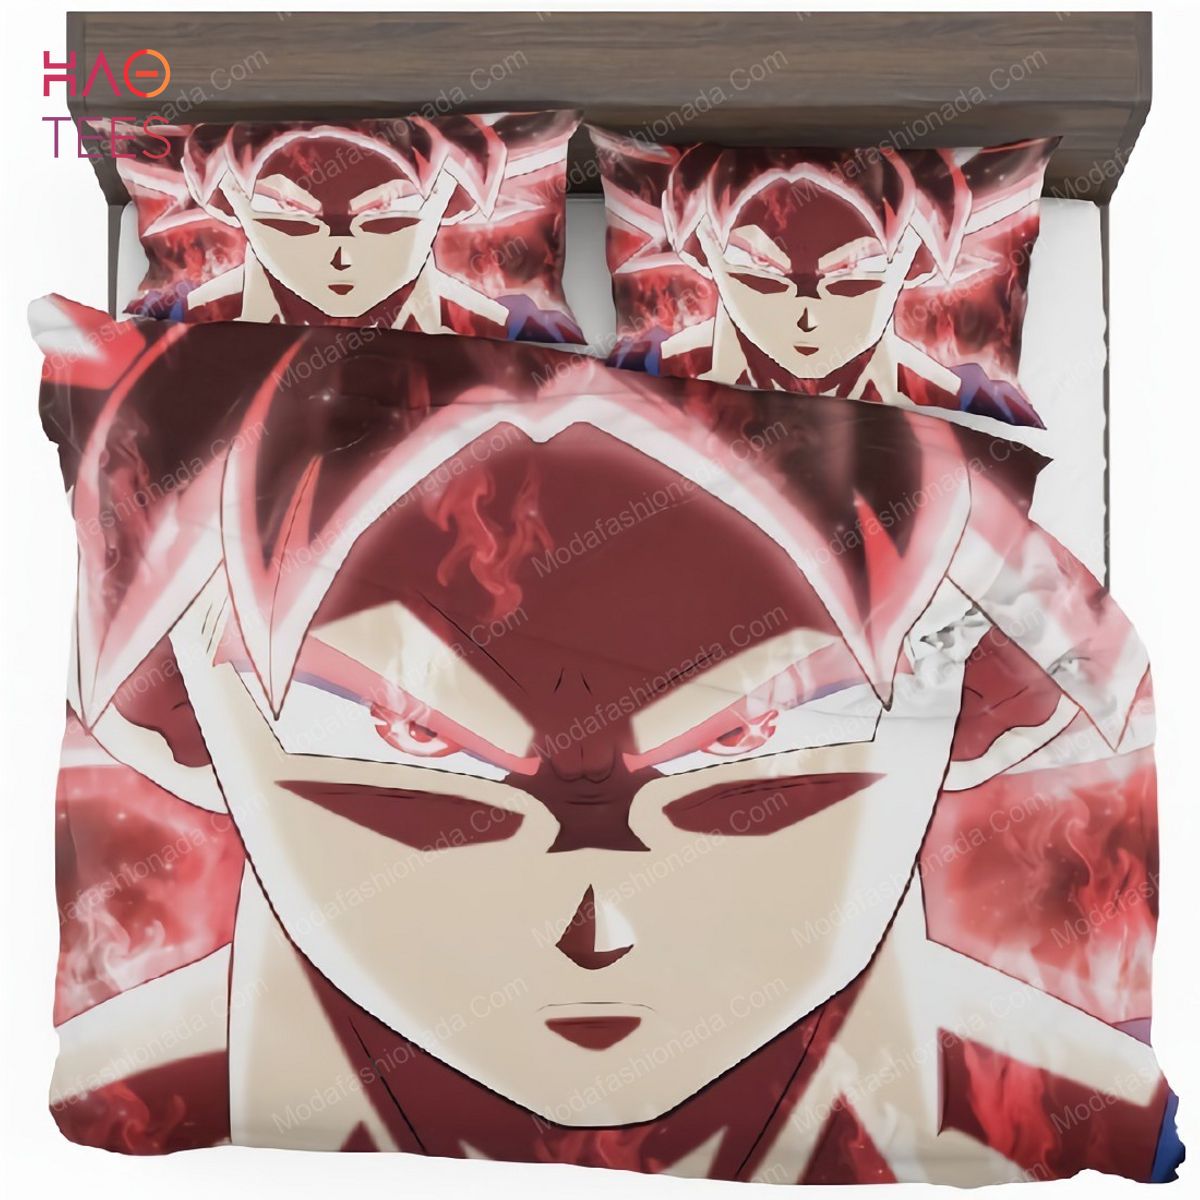 Goku Dragon Ball Super Japanese Anime Bedding Sets